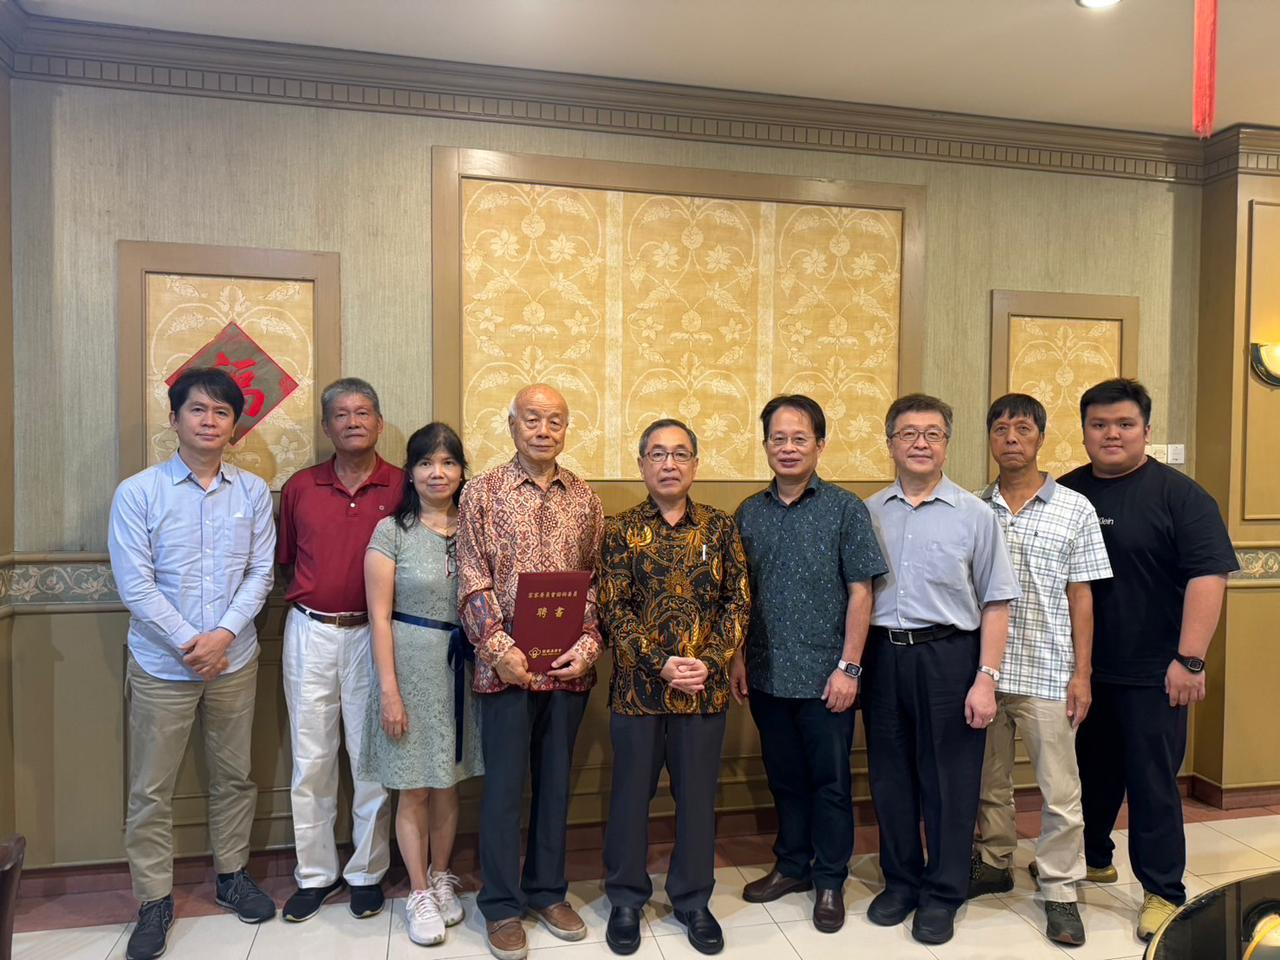 Director General Teto Surabaya Isaac Chiu bersama rekan-rekan serta Penasehat Urusan Hakka Bapak Lu Chuang Xiong dan kerabat foto bersama

